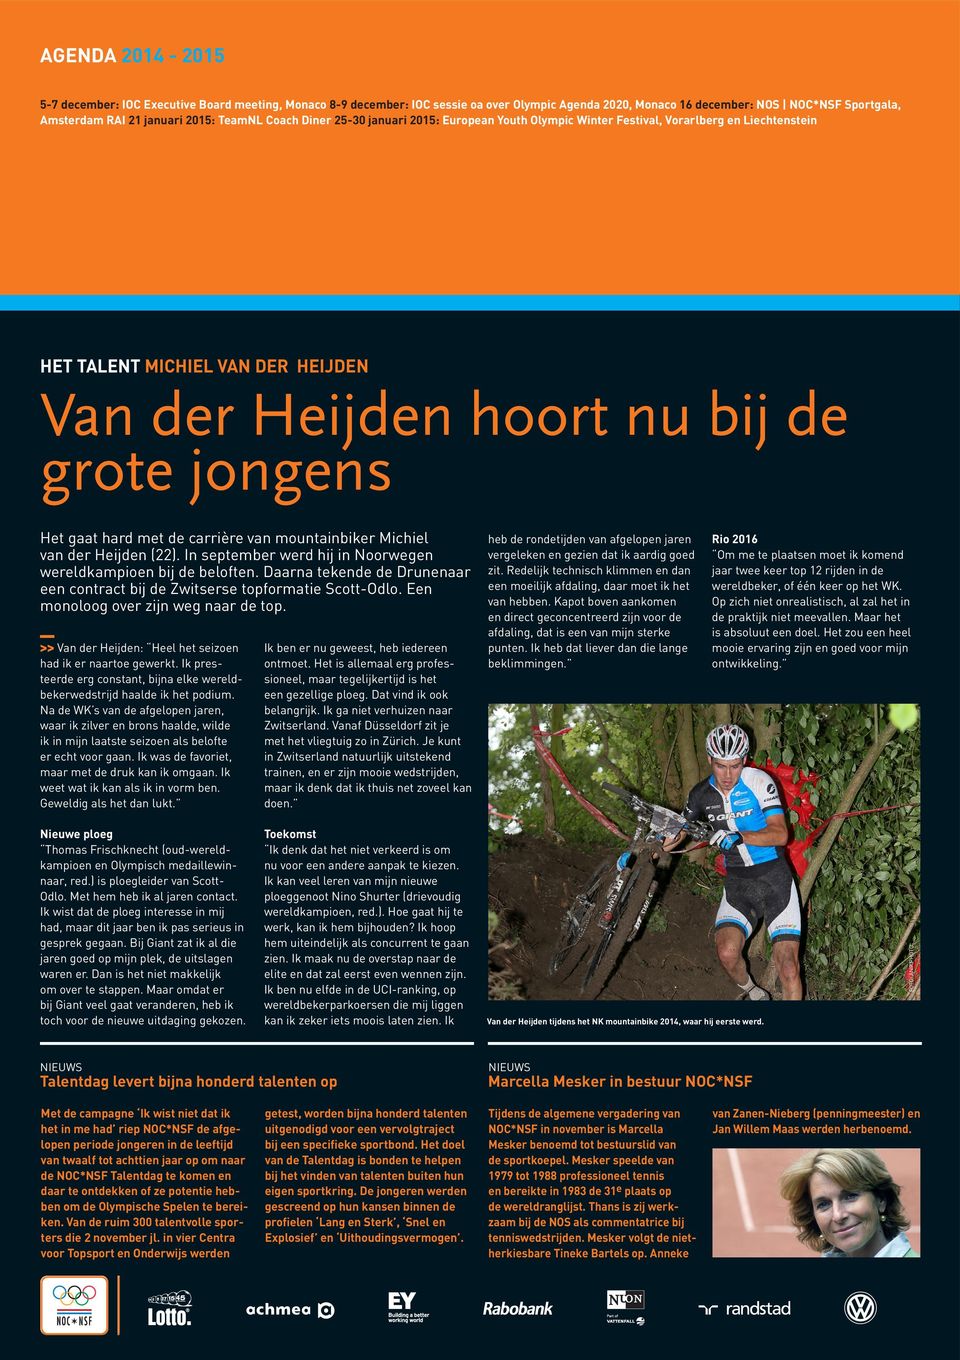 hard met de carrière van mountainbiker Michiel van der Heijden (22). In september werd hij in Noorwegen wereldkampioen bij de beloften.